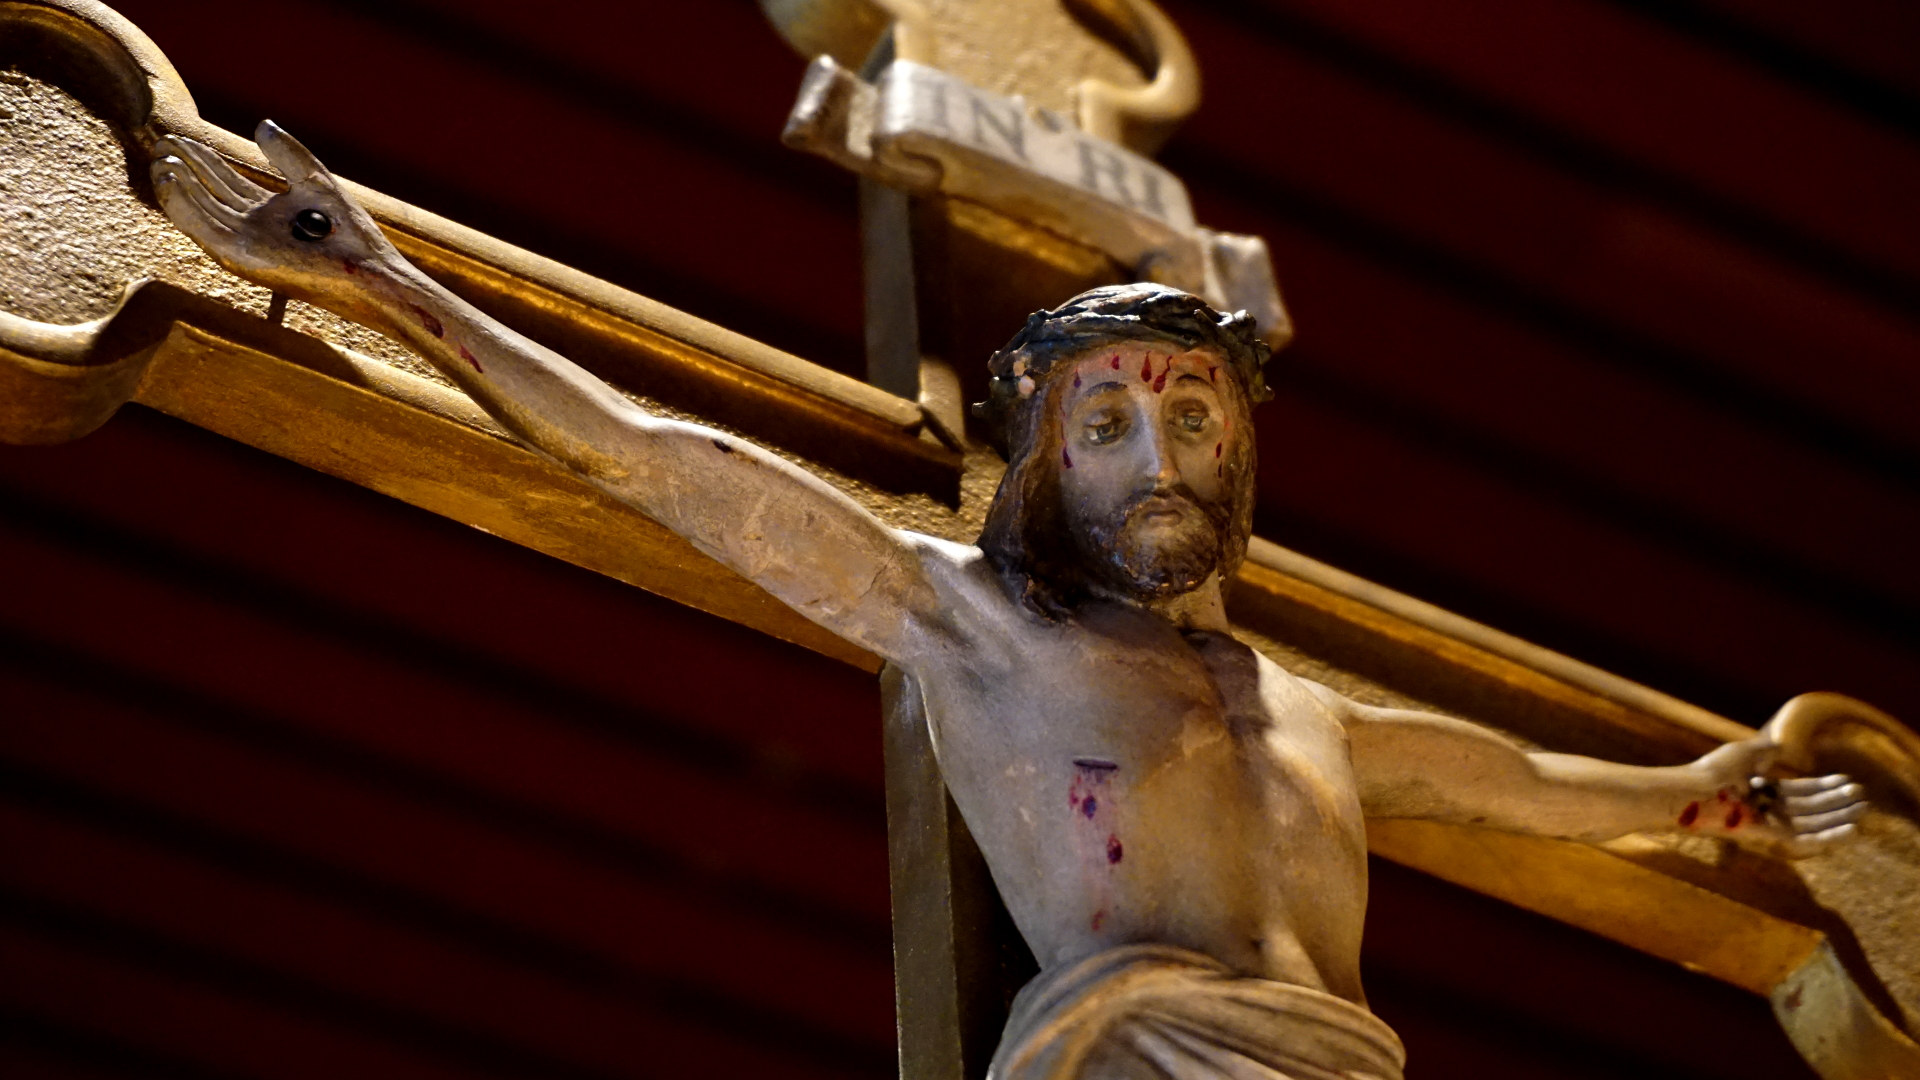 Kruzifix in St. Canisius Köln — Paradisum